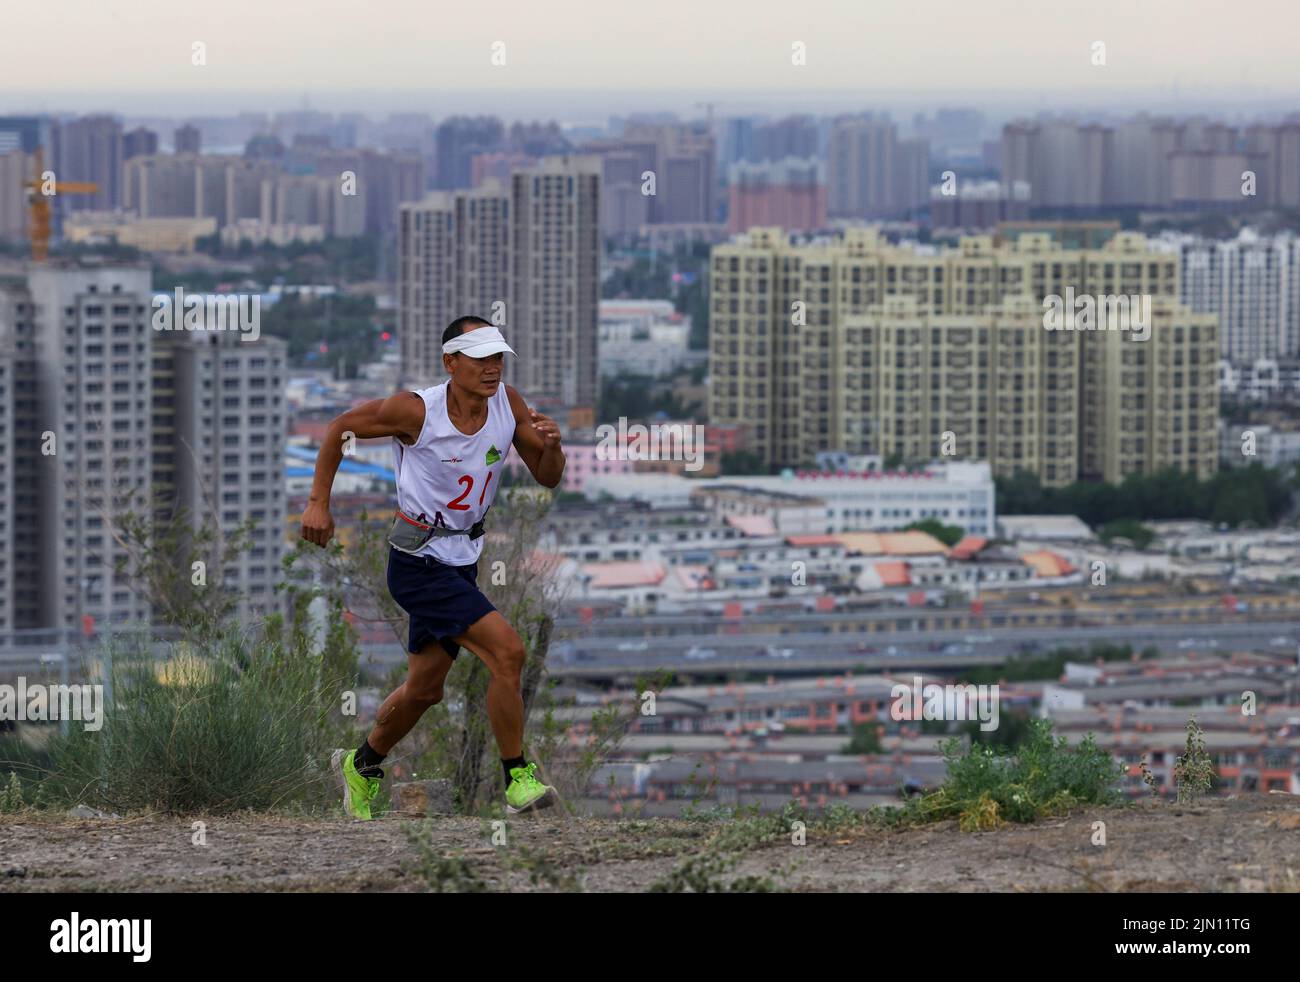 (220808) -- XINJIANG, 8. August 2022 (Xinhua) -- Chen Ruifeng joggt in Urumqi, nordwestlich der Autonomen Region Xinjiang Uygur in China, 14. Juni 2022. Der 52-jährige Chen Ruifeng, der in Xinjiang geboren wurde, ist ein Paragliding-Amateur. Er sagt, dass er sich wie mit seinen eigenen Flügeln fühlt, wenn der Gleitschirm geöffnet wird. Im Jahr 2016 begann Chen Ruifeng, Gleitschirmfliegen zu üben. Später trat er einem lokalen Verein bei und erhielt nach dem Training seine Flugbescheinigung. Als Outdoor-Enthusiast engagiert er sich auch für Trailrunning, Bergsteigen und Eisklettern. Seiner Meinung nach das einzigartige Gelände von Xinjiang, wie Berge, Steppen a Stockfoto